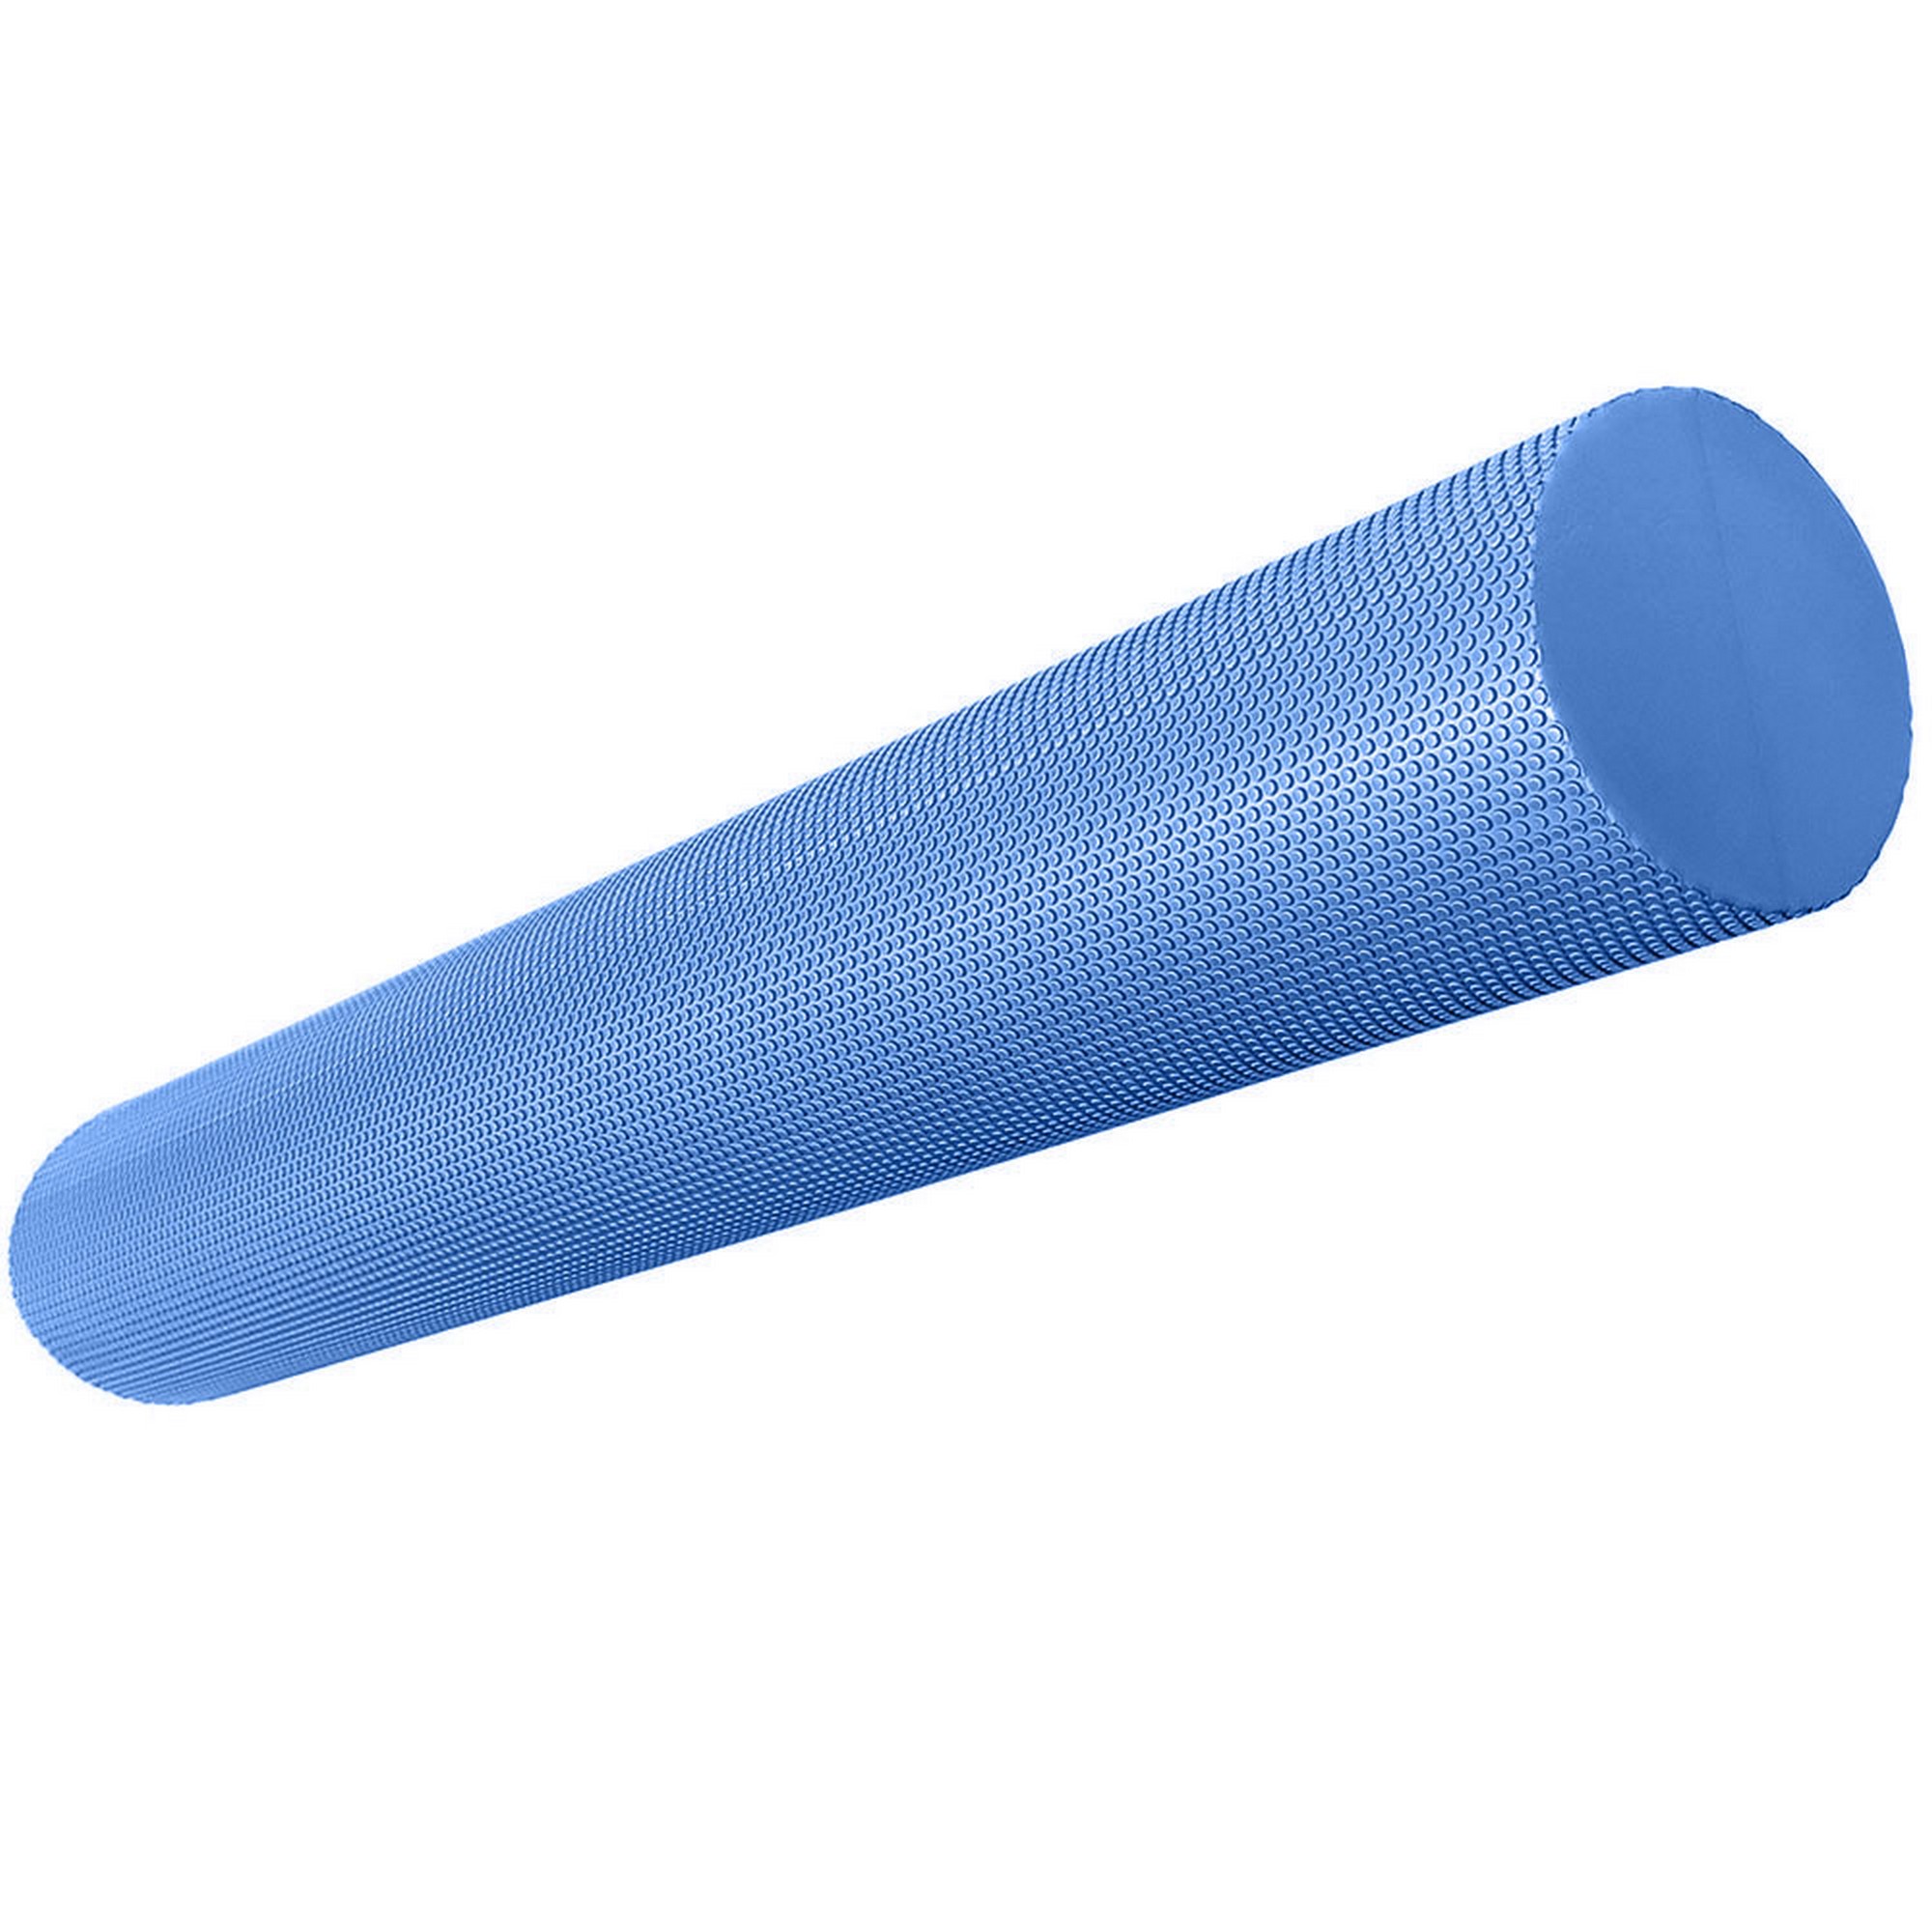 Купить Ролик для йоги полумягкий Профи 90x15см Sportex ЭВА E39106-1 синий,